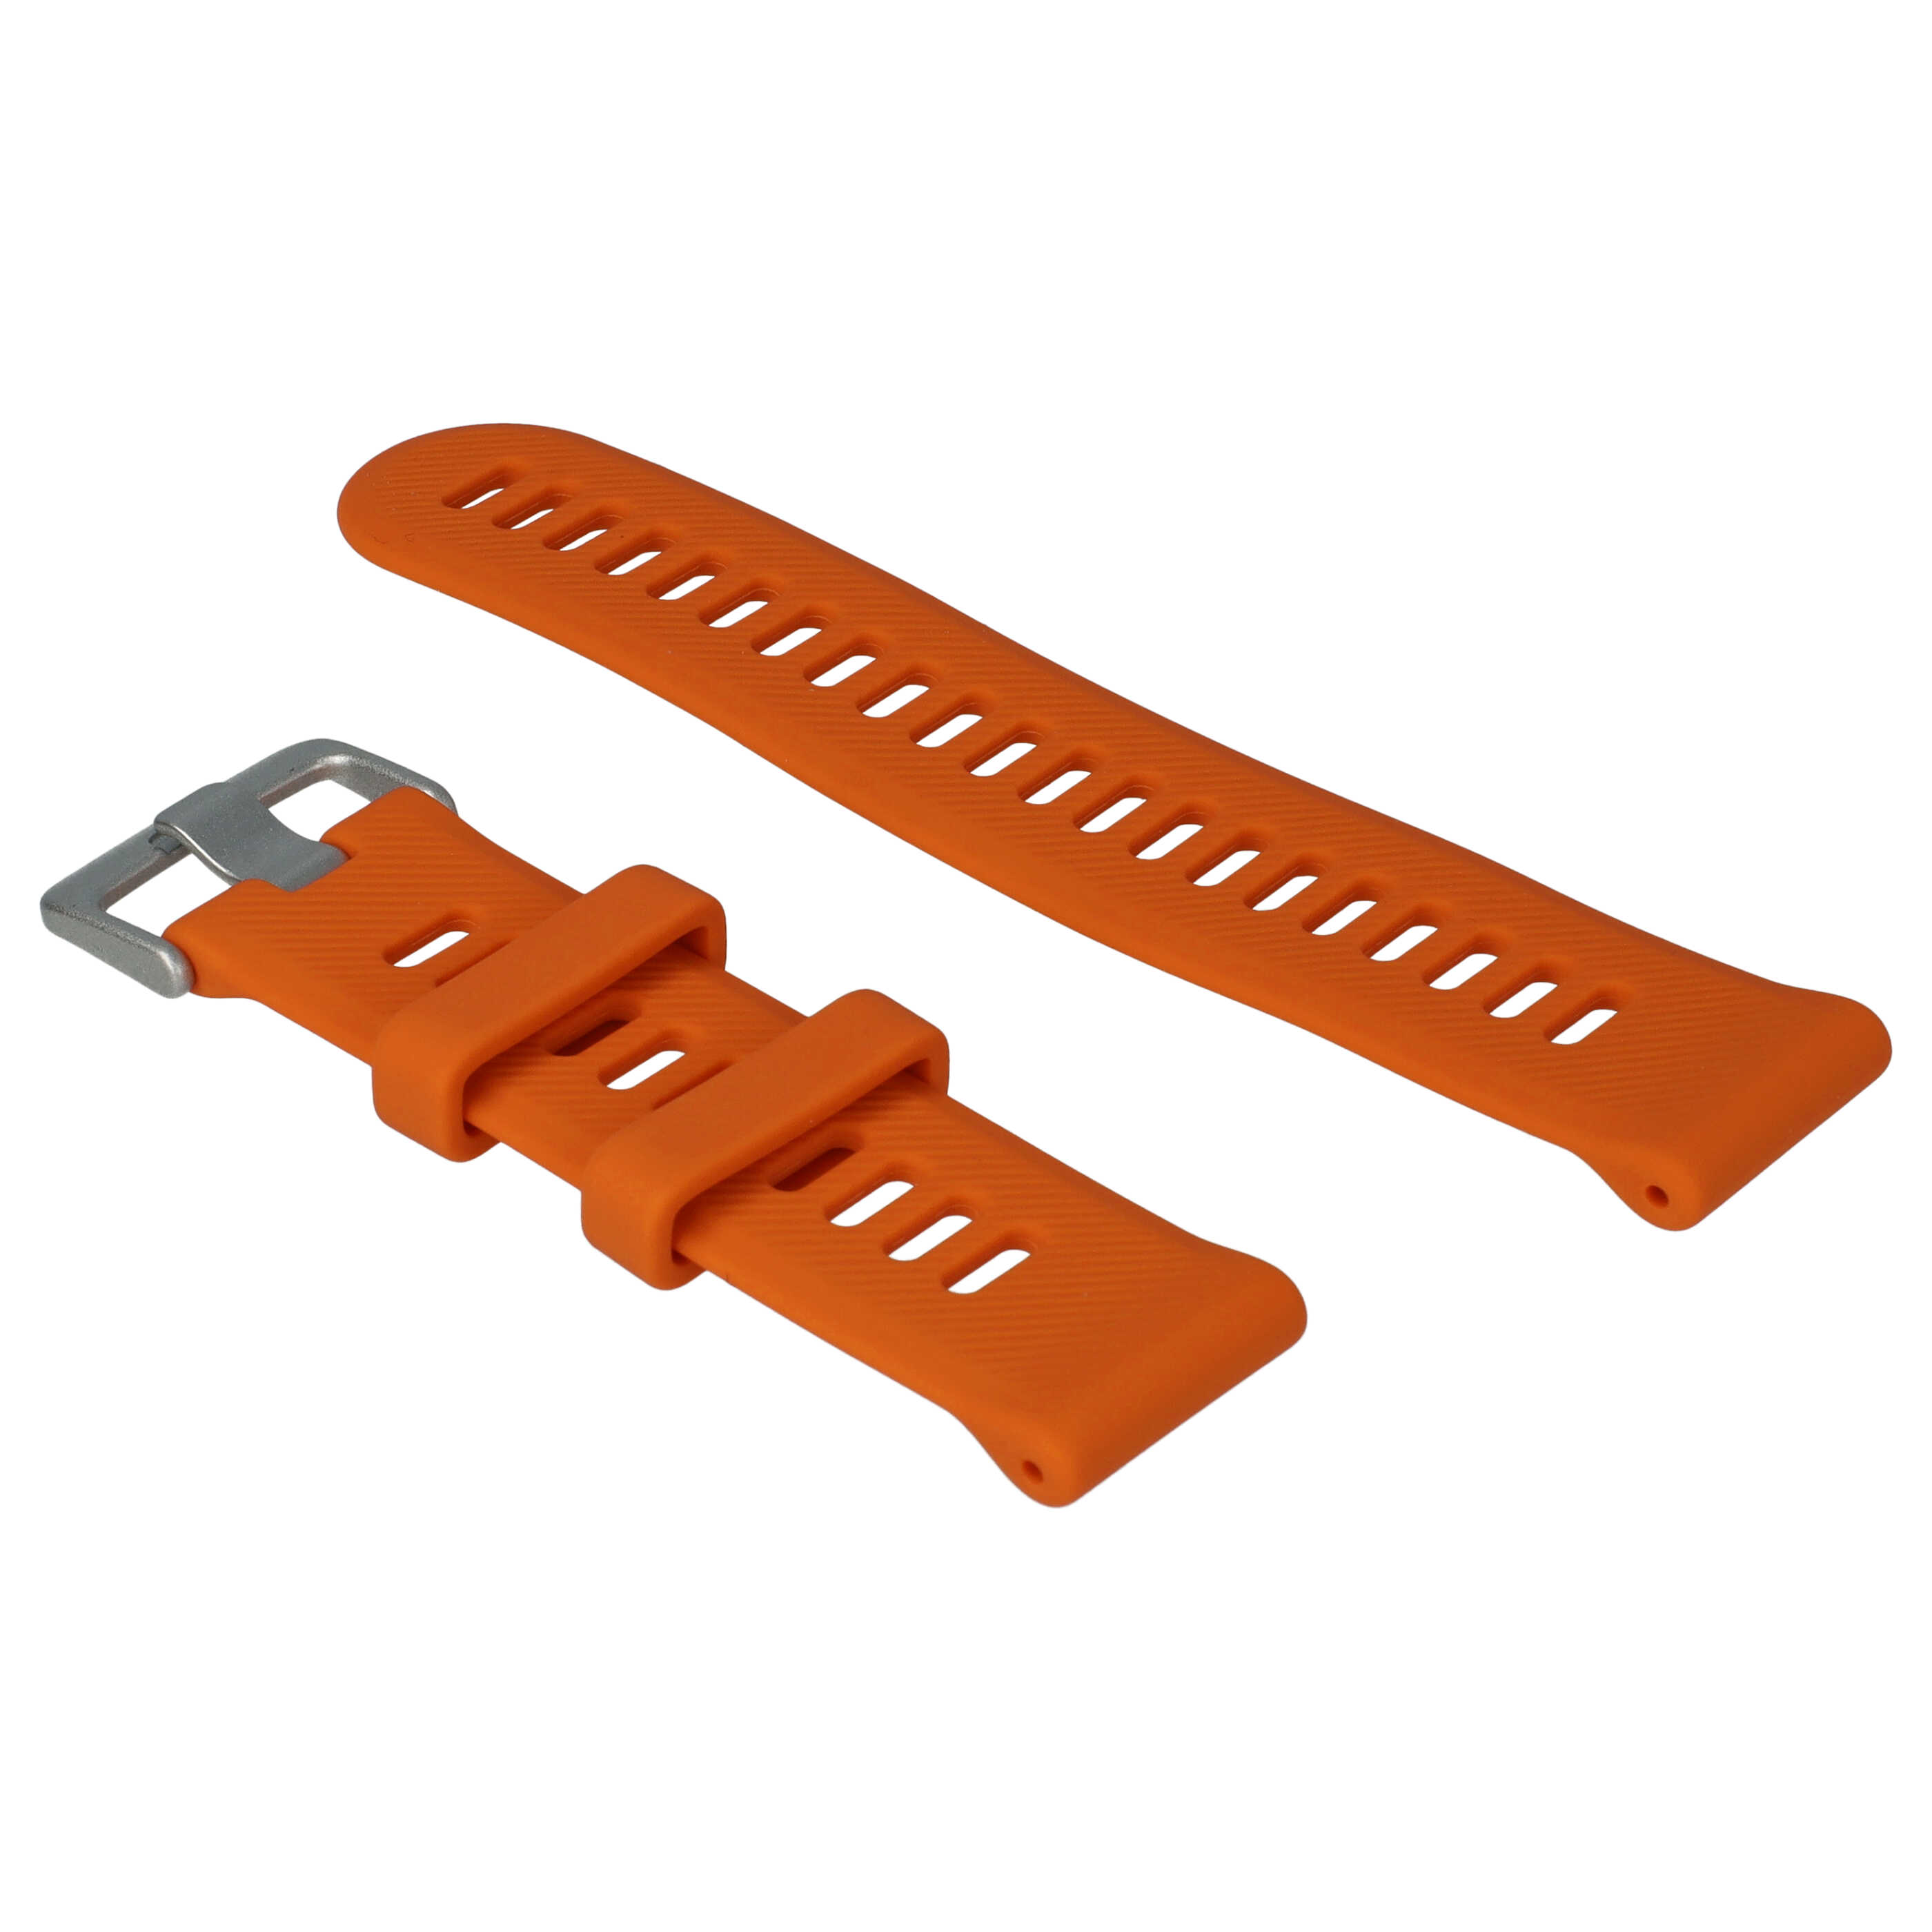 Pasek do smartwatch Garmin Forerunner - dł. 9 + 12,2 cm, szer. 22 mm, silikon, pomarańczowy